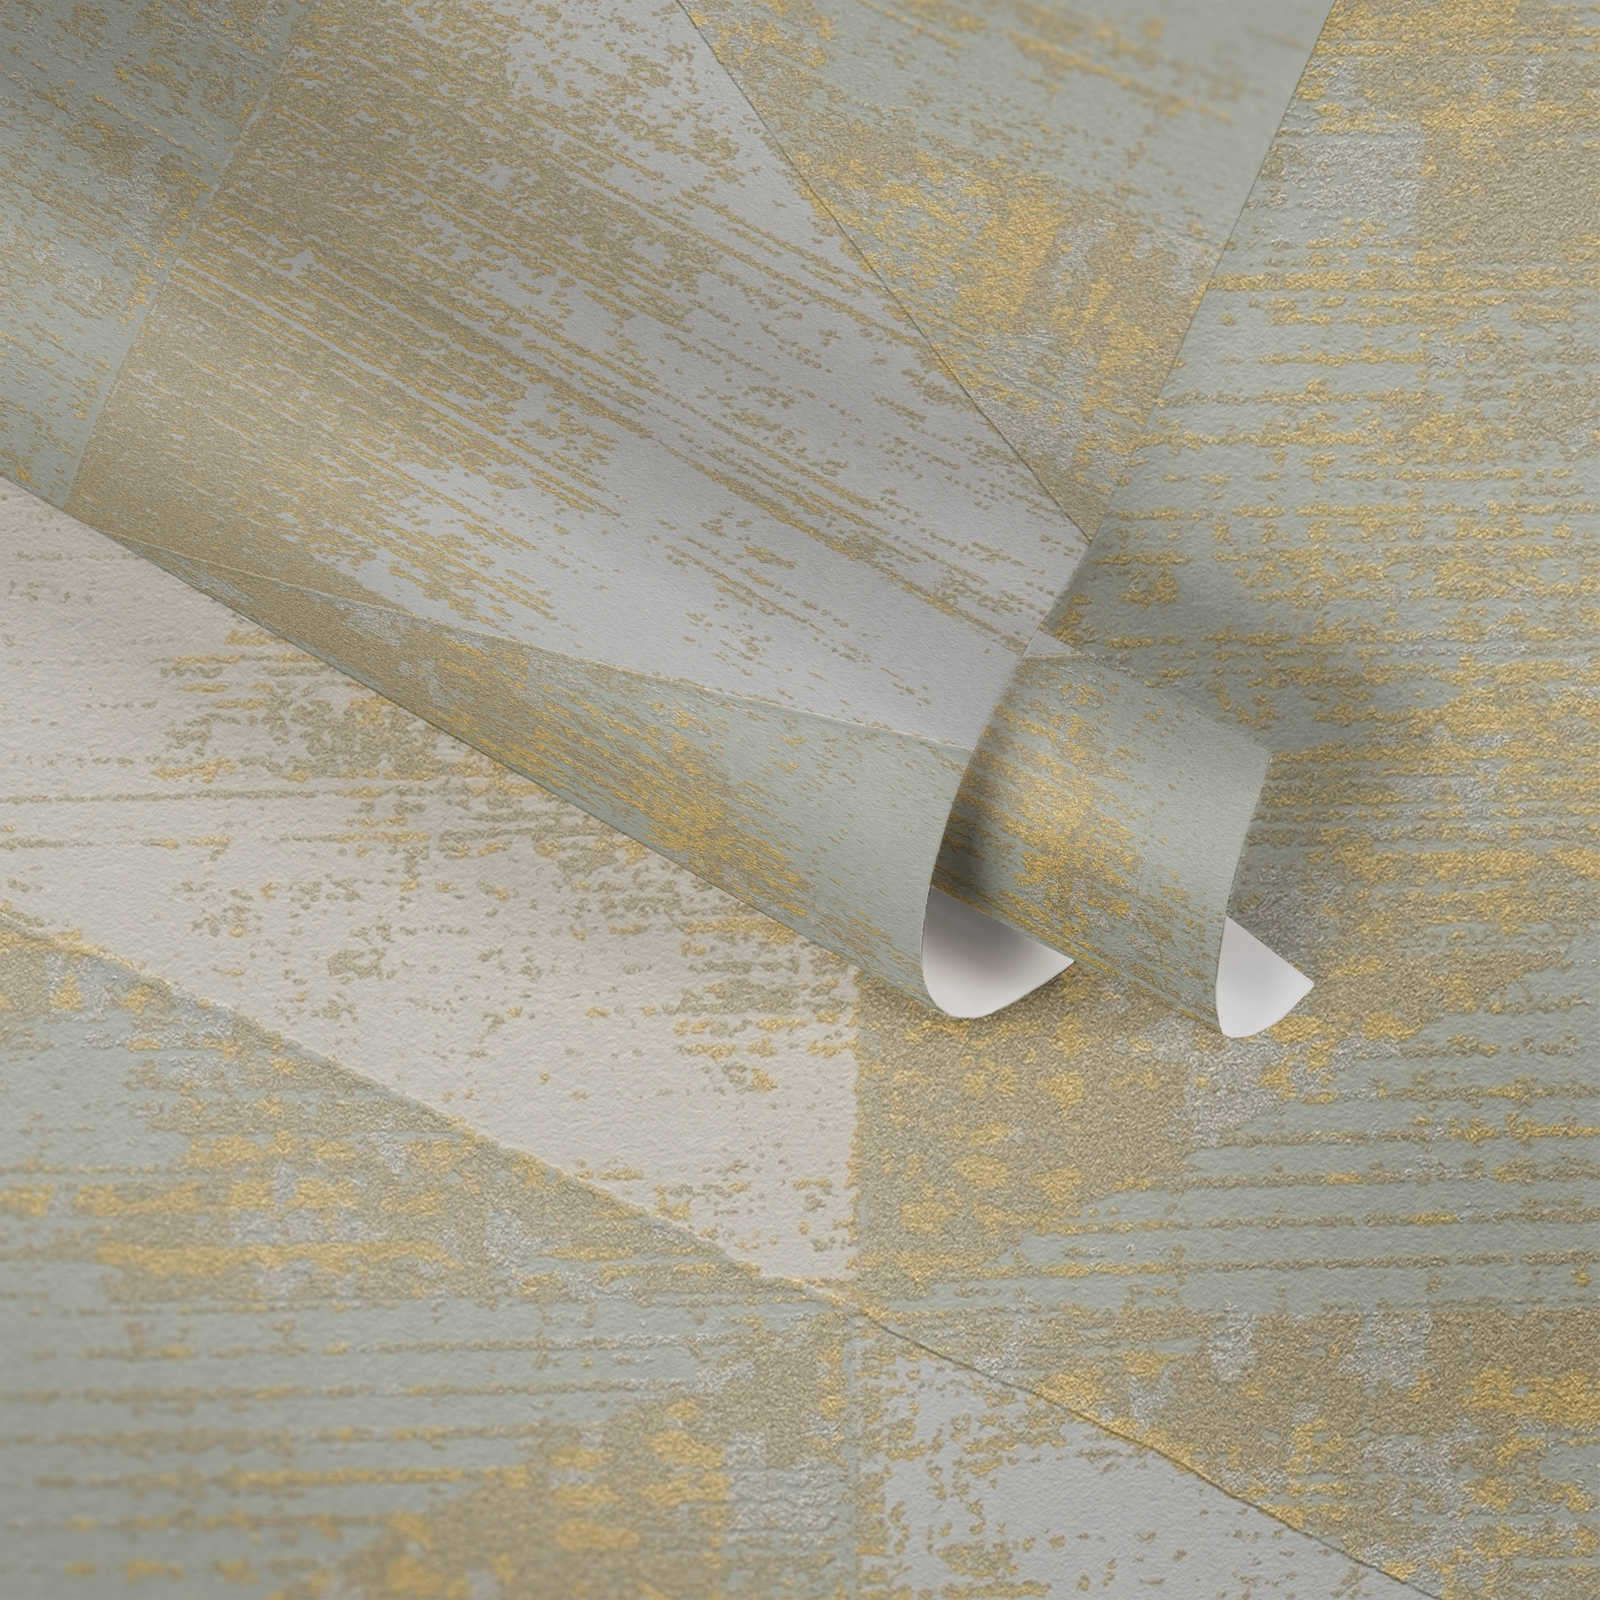             Papel pintado no tejido con acento metálico - metálico, crema, beige
        